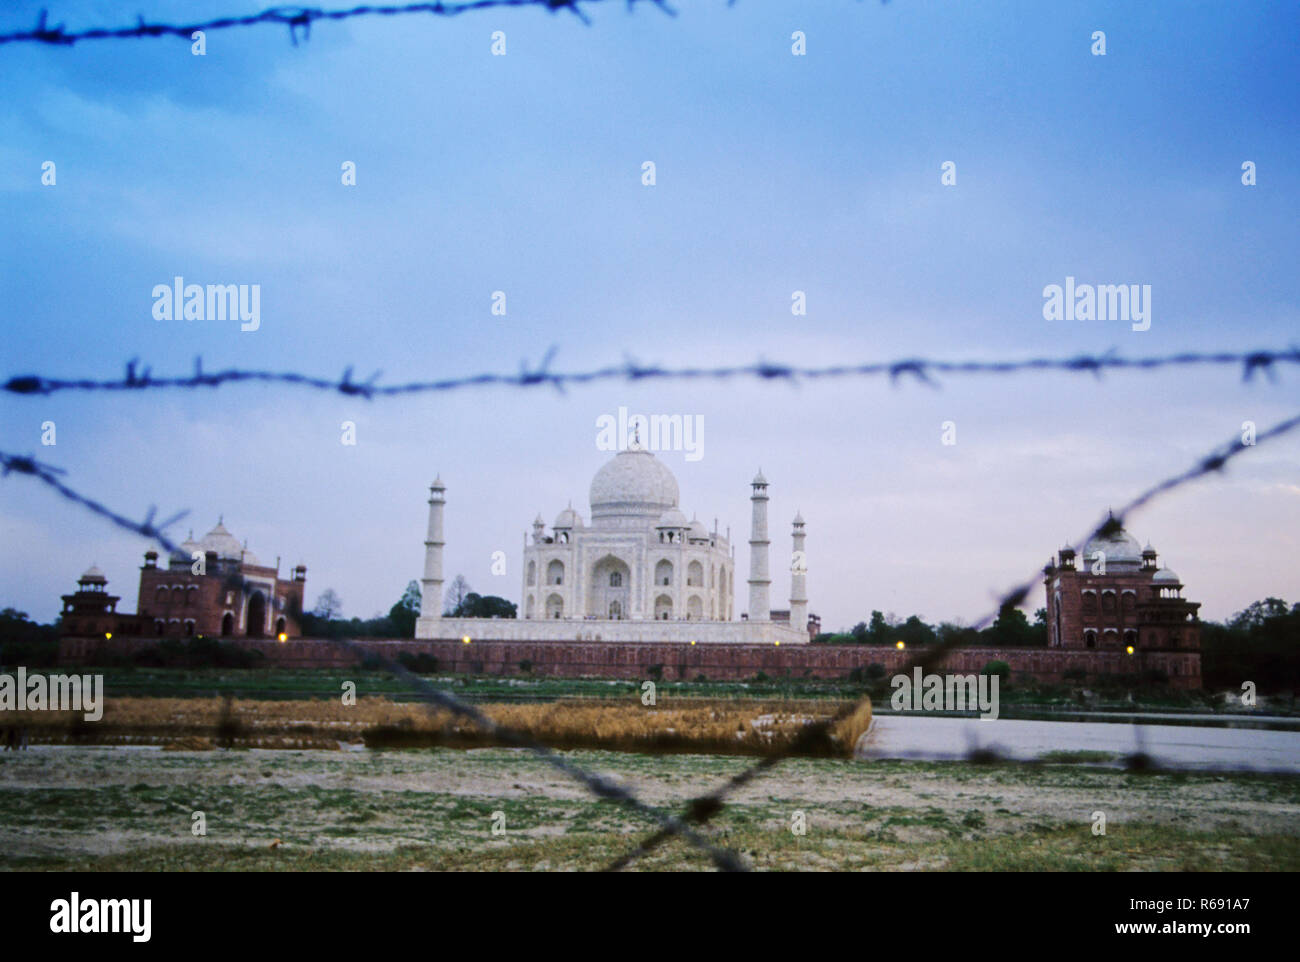 Taj Mahal, mausoleo de mármol blanco marfil, maravillas del mundo, Patrimonio de la Humanidad de la Unesco, Agra, Uttar Pradesh, India, Asia Foto de stock